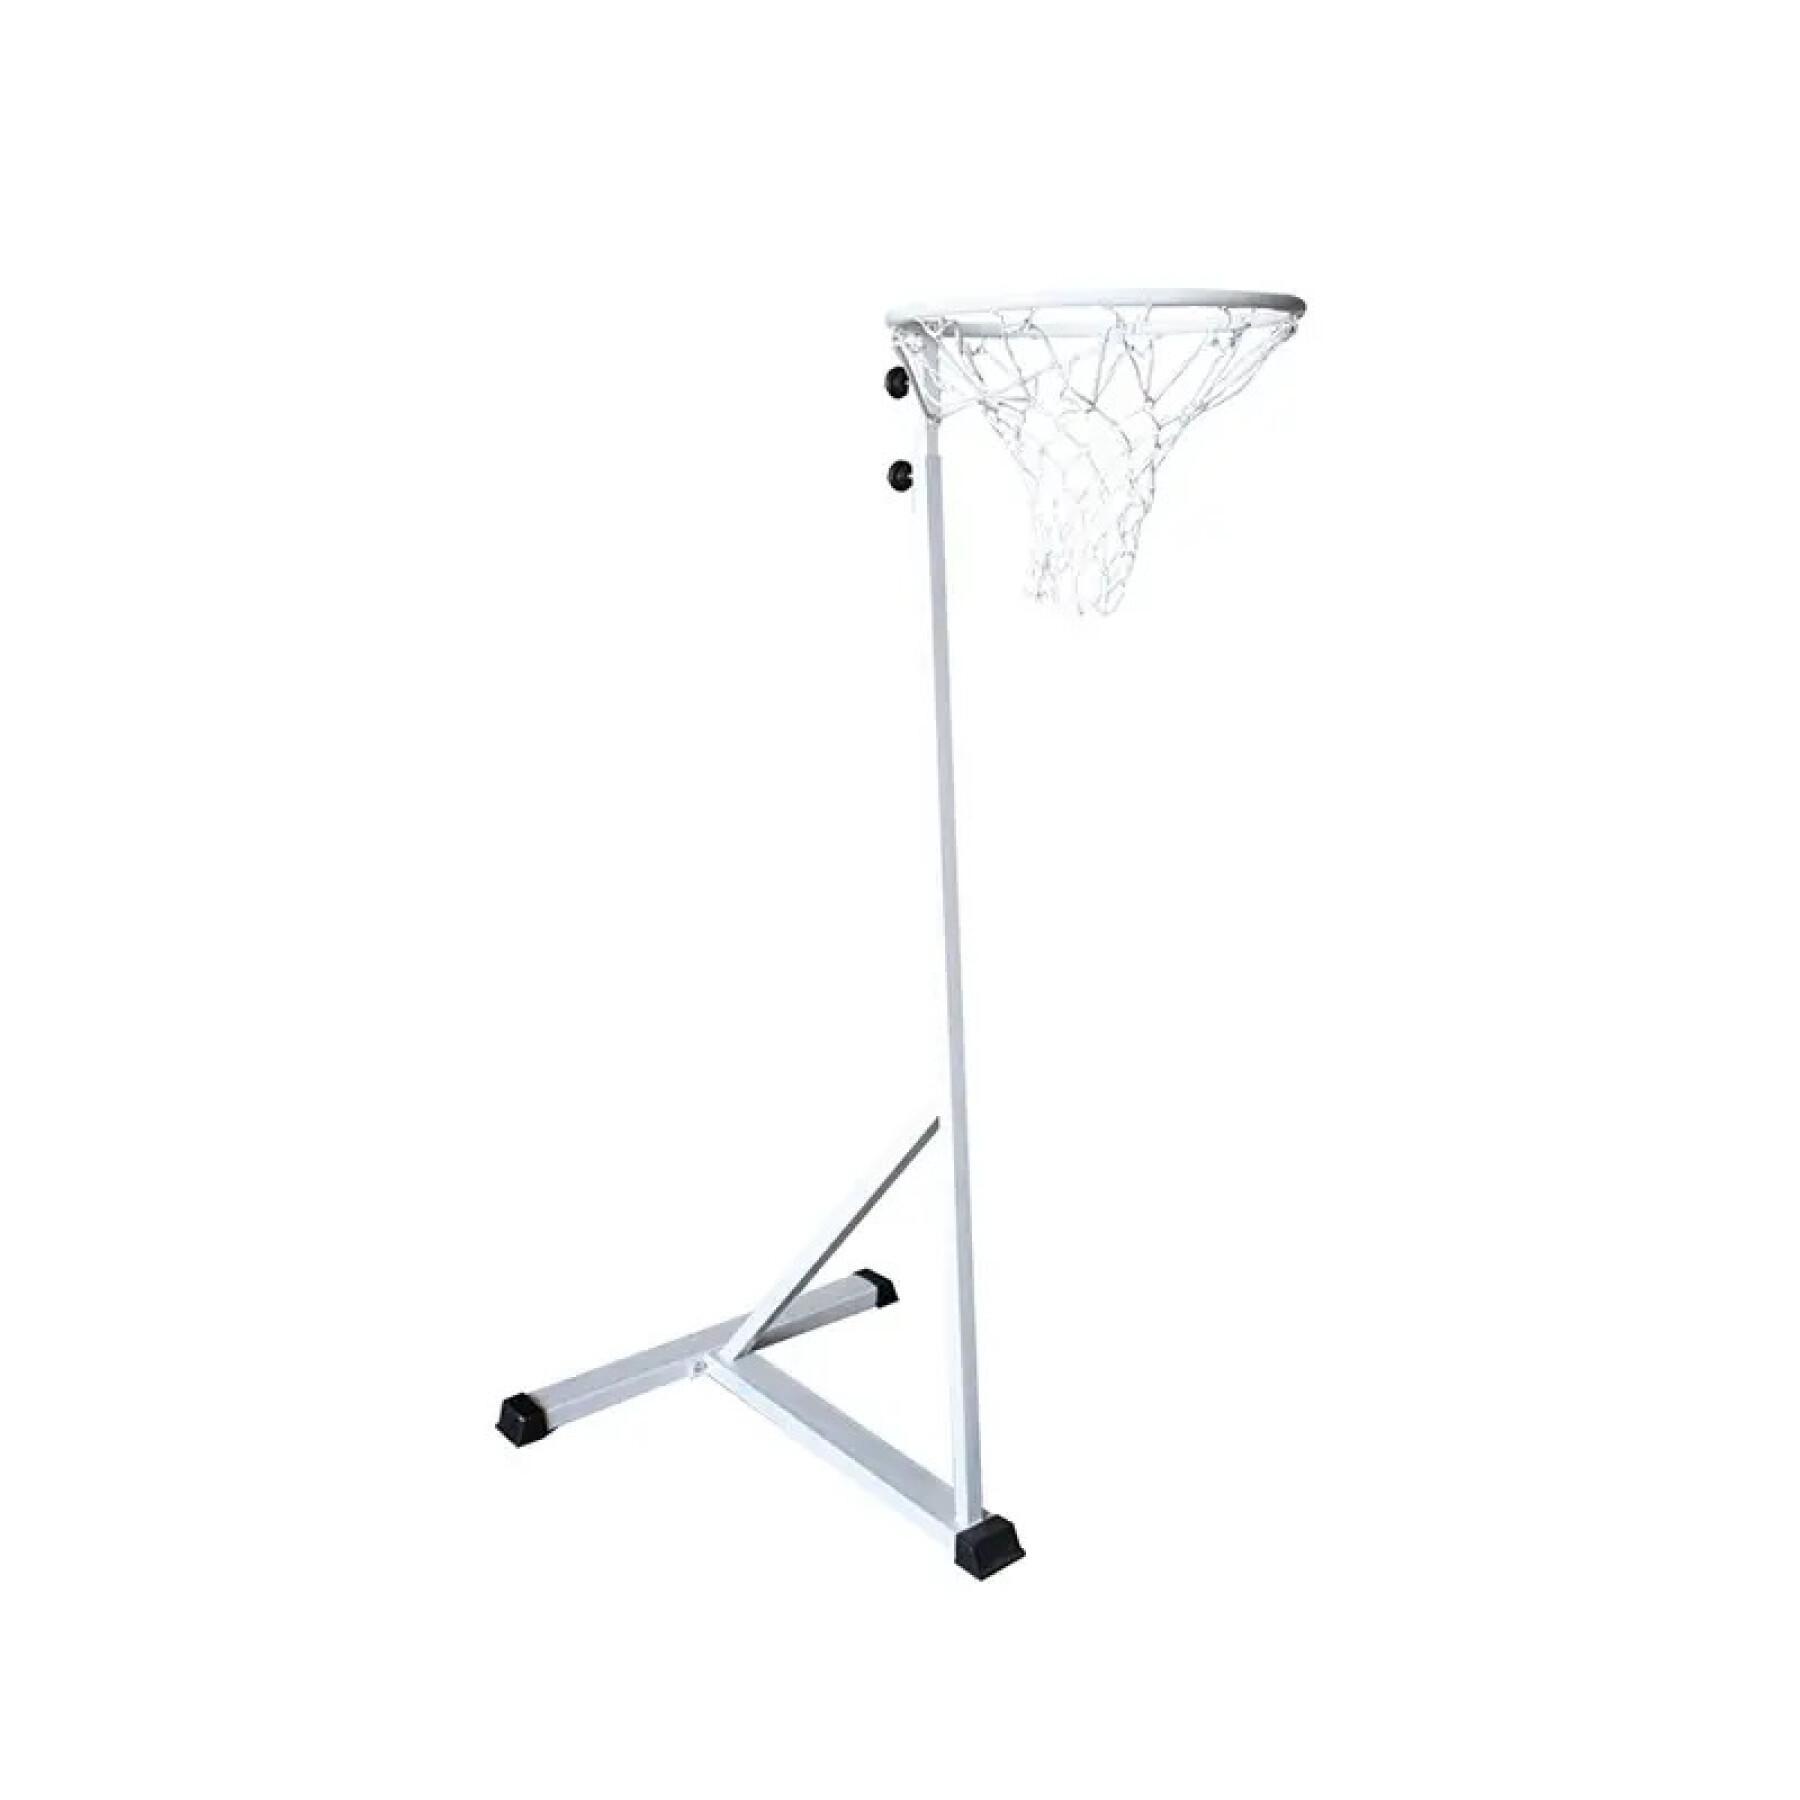 Canasta de baloncesto Softee Equipment